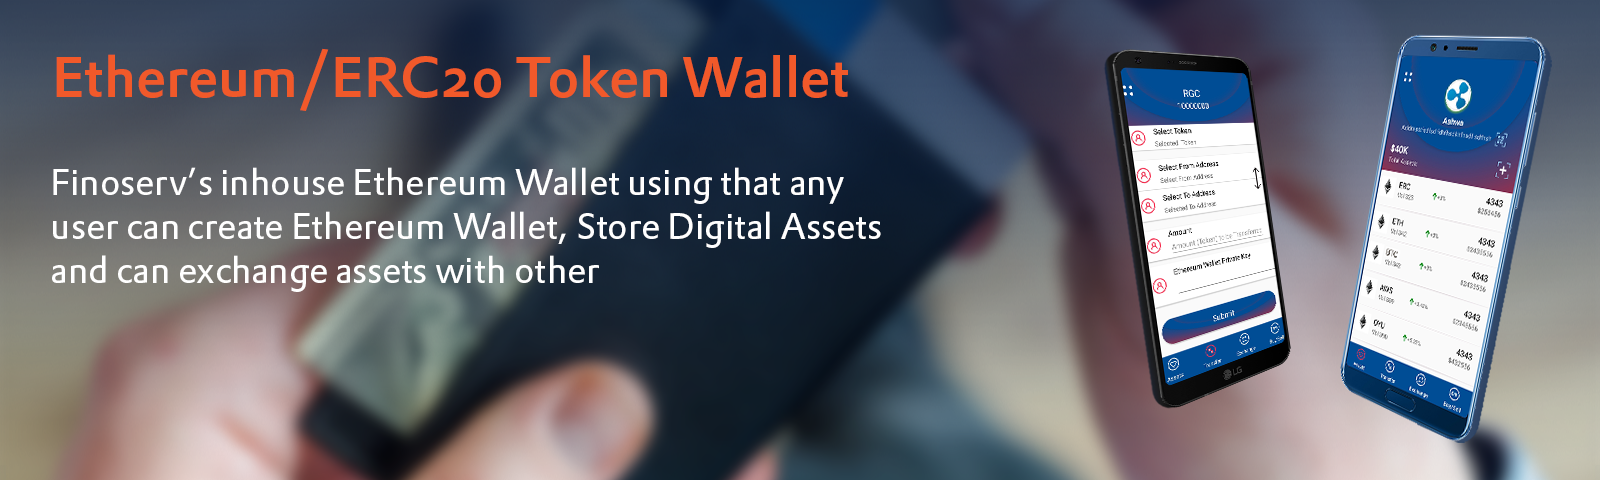 Ethereum/ERC20 Token Wallet